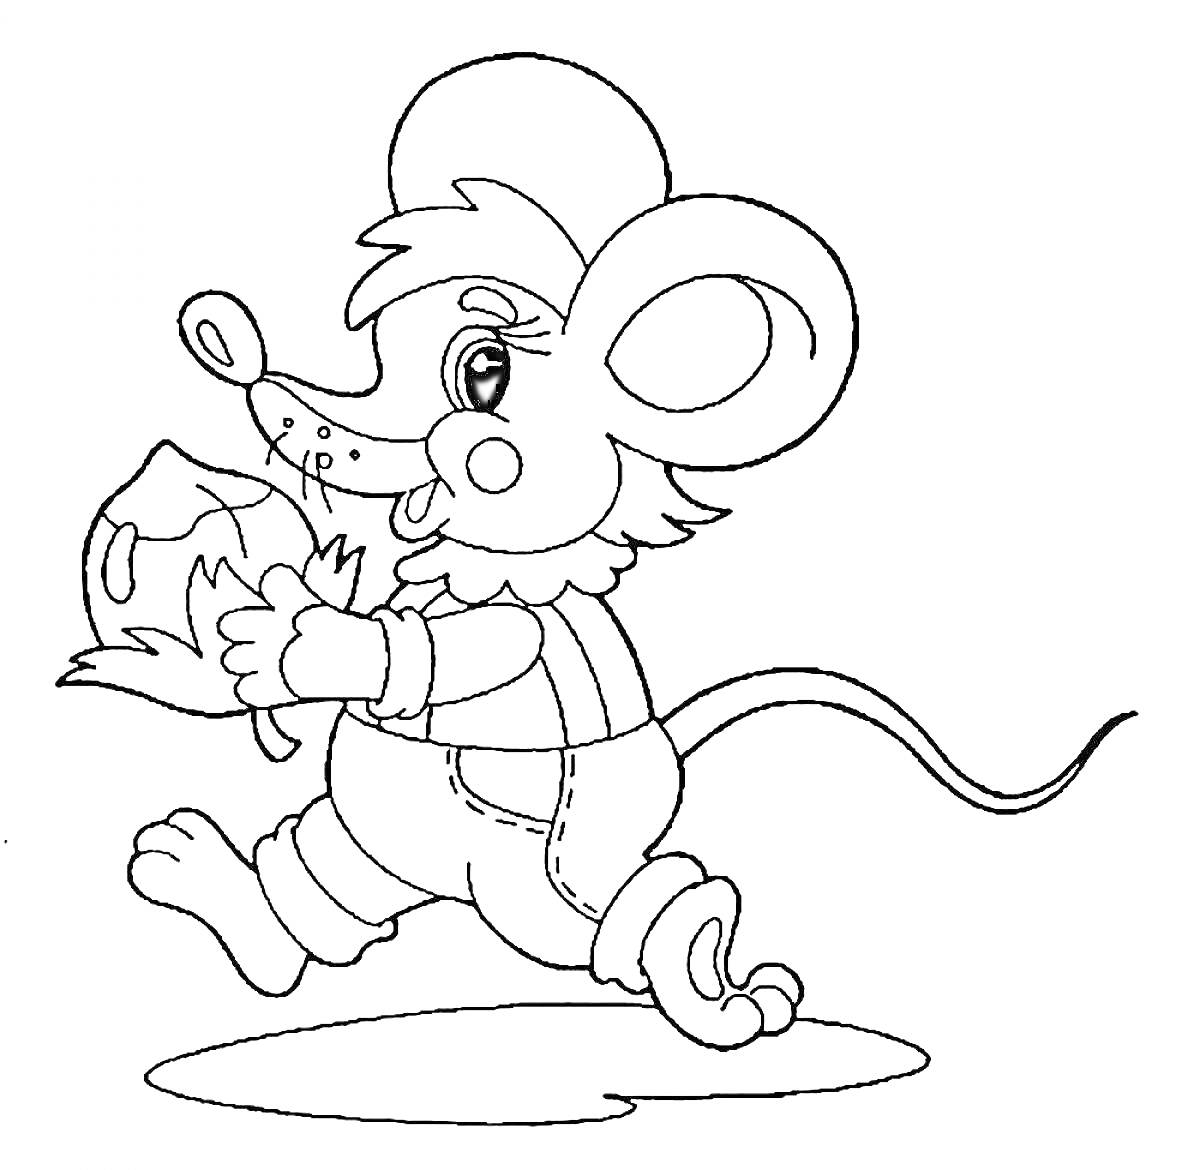 Раскраска Мышка в комбинезоне с сыром